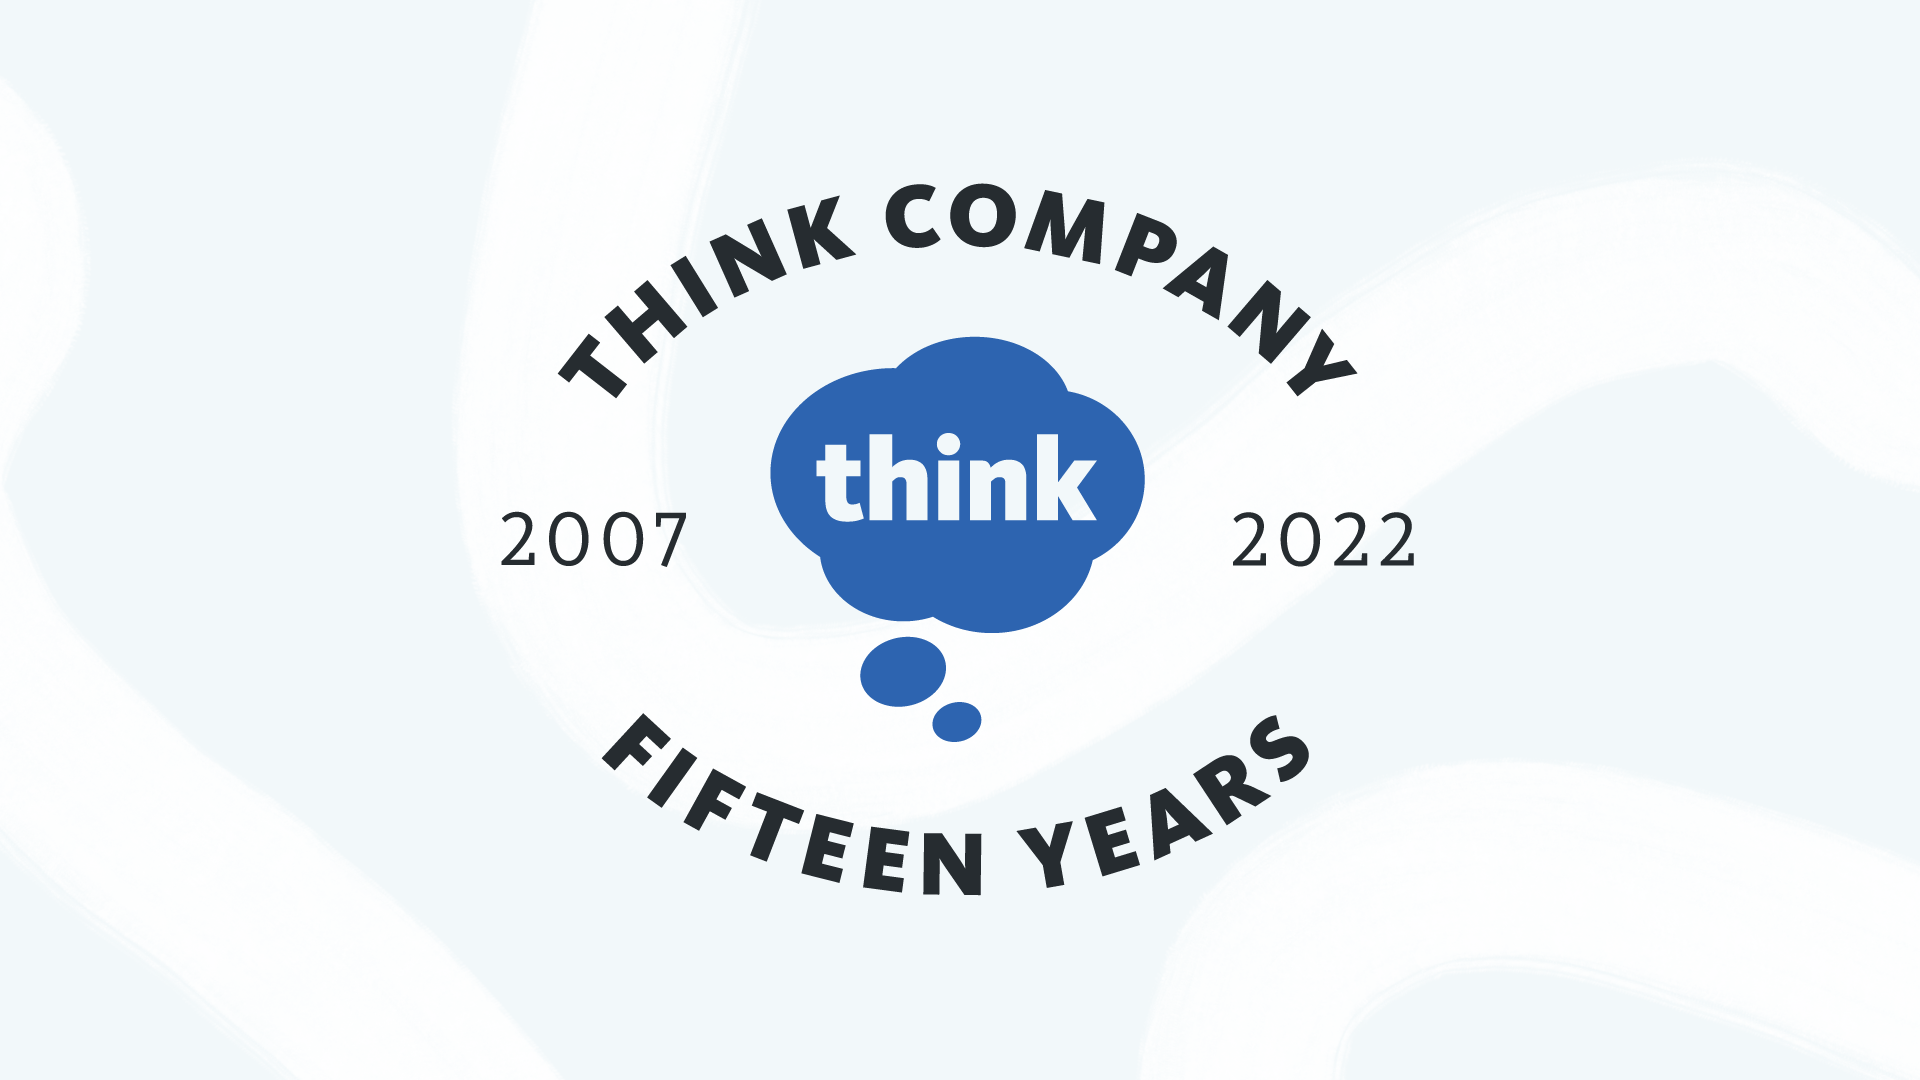 Think Company logo celebrating 15 years.